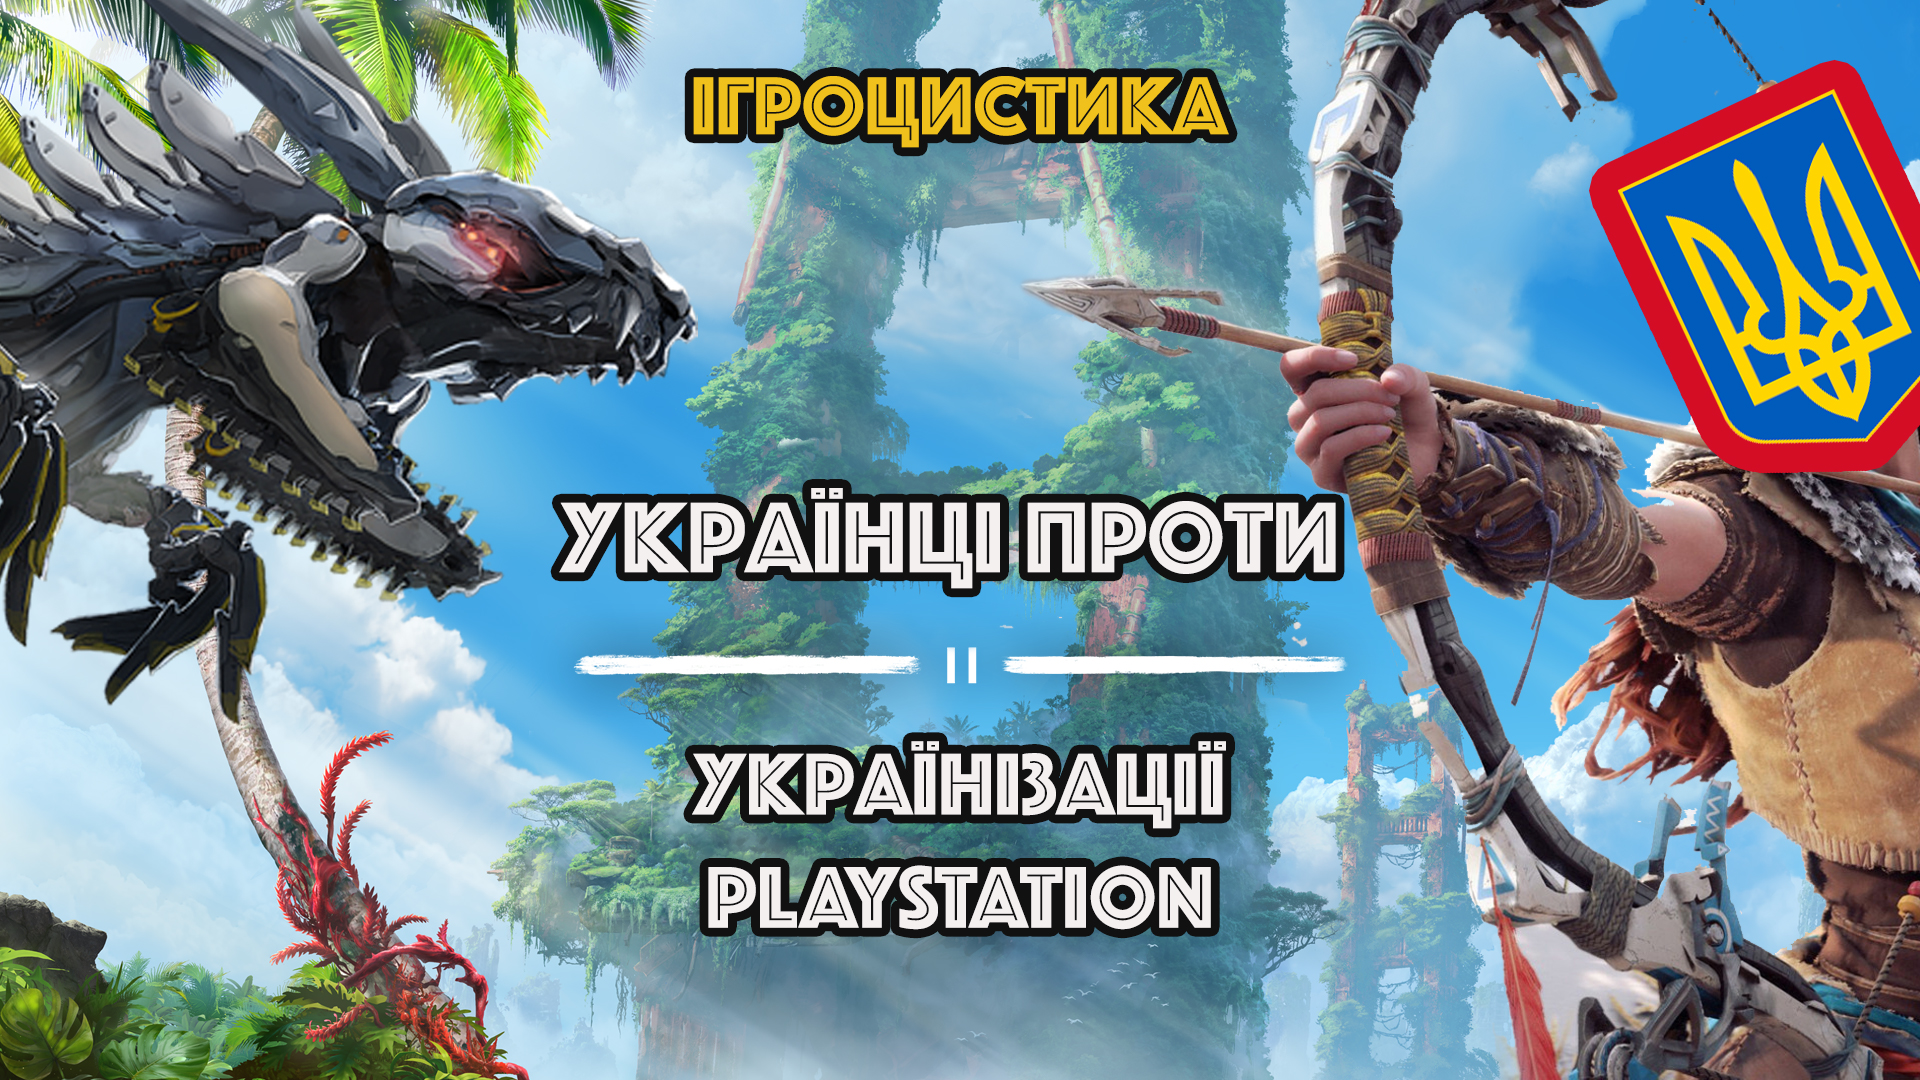 🇺🇦 Ігроцистика: Українізація PlayStation